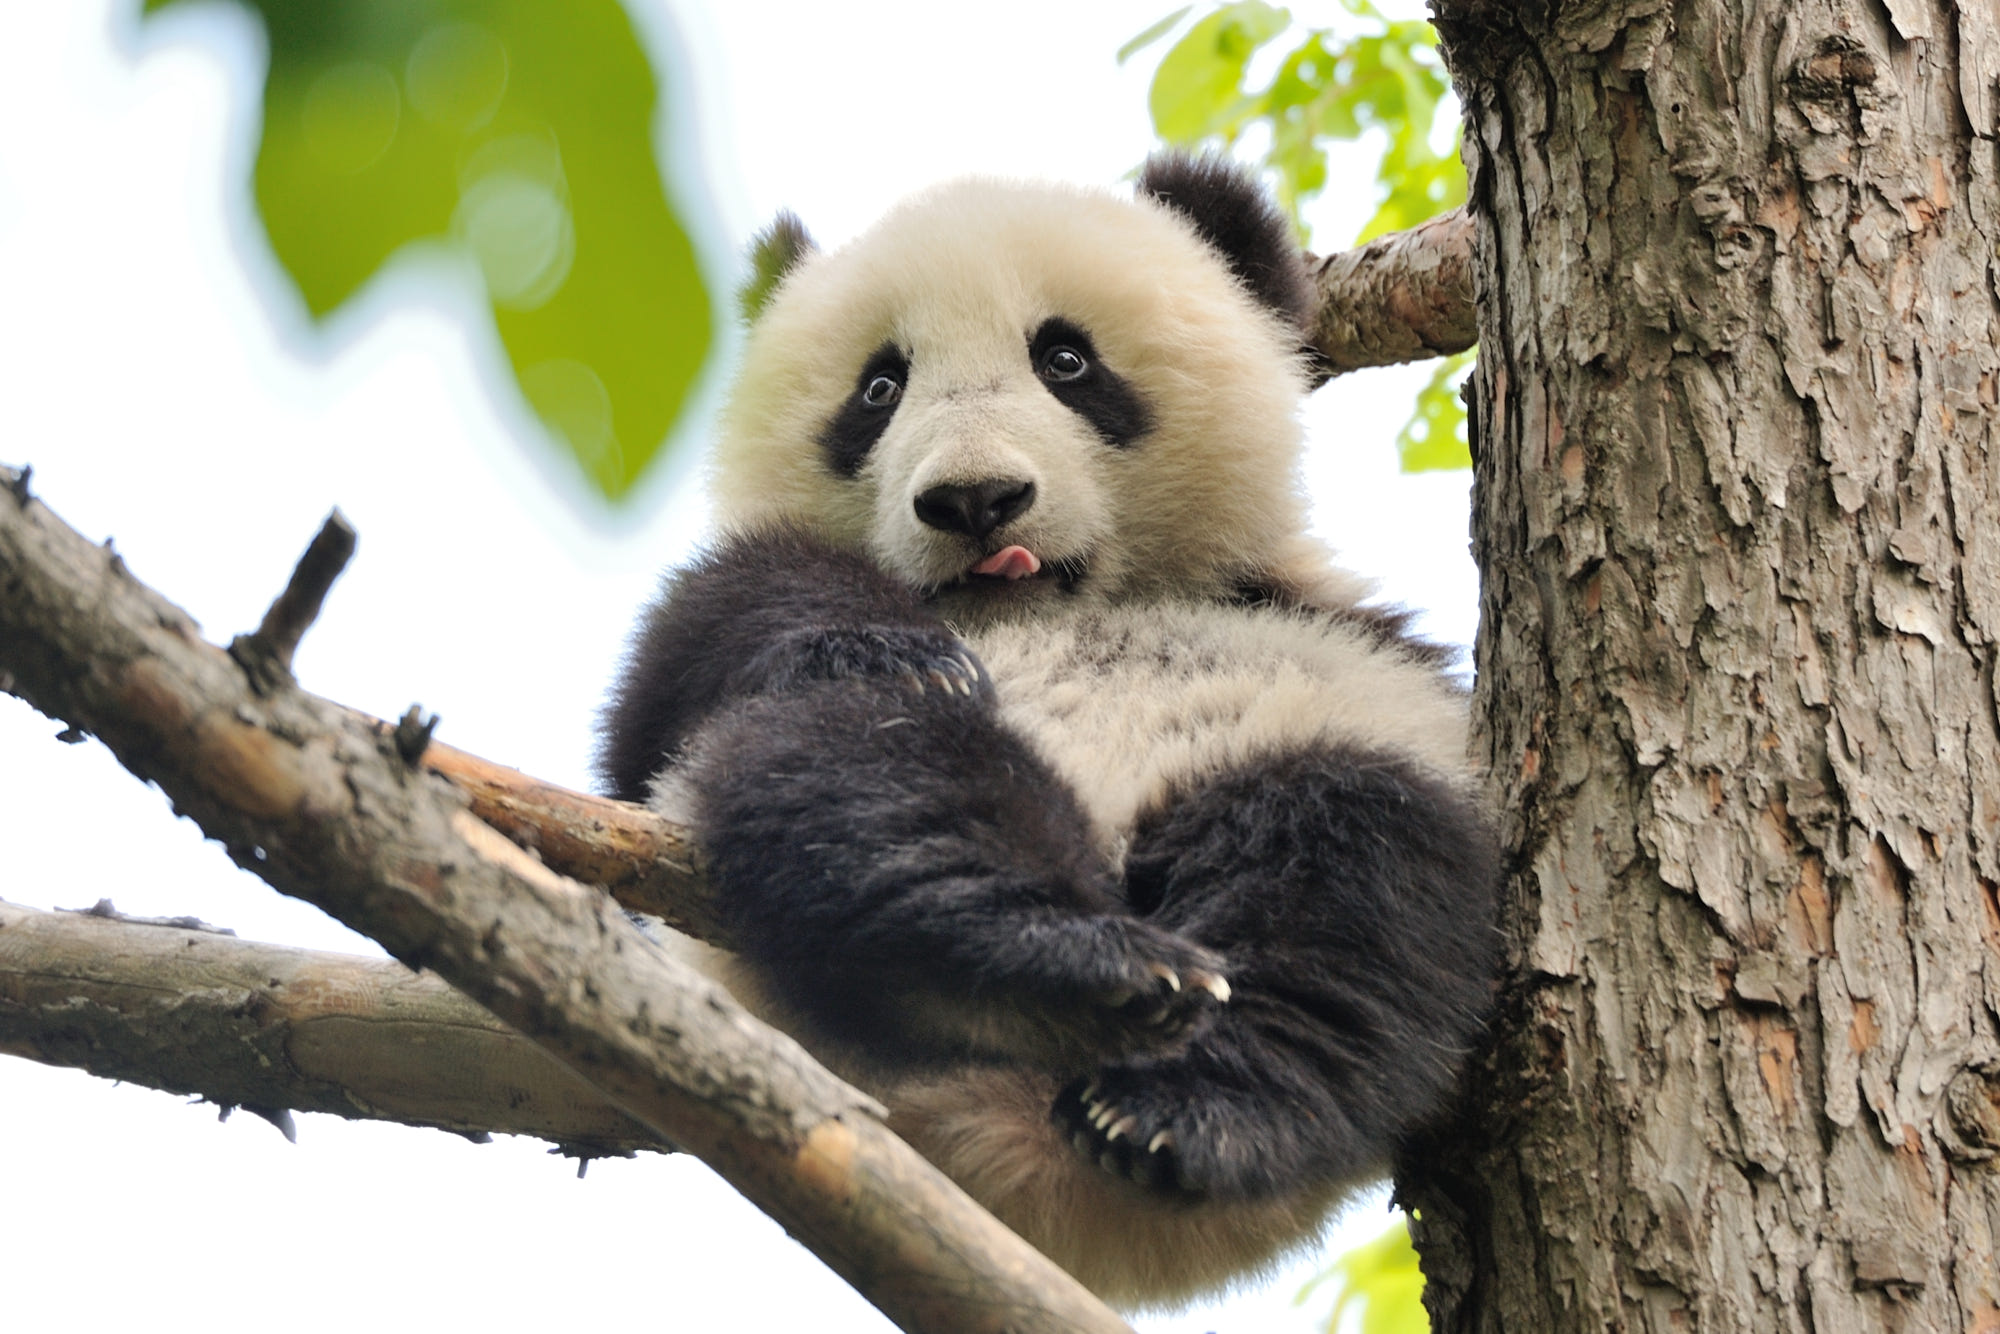 Snaaks groot panda op die boom